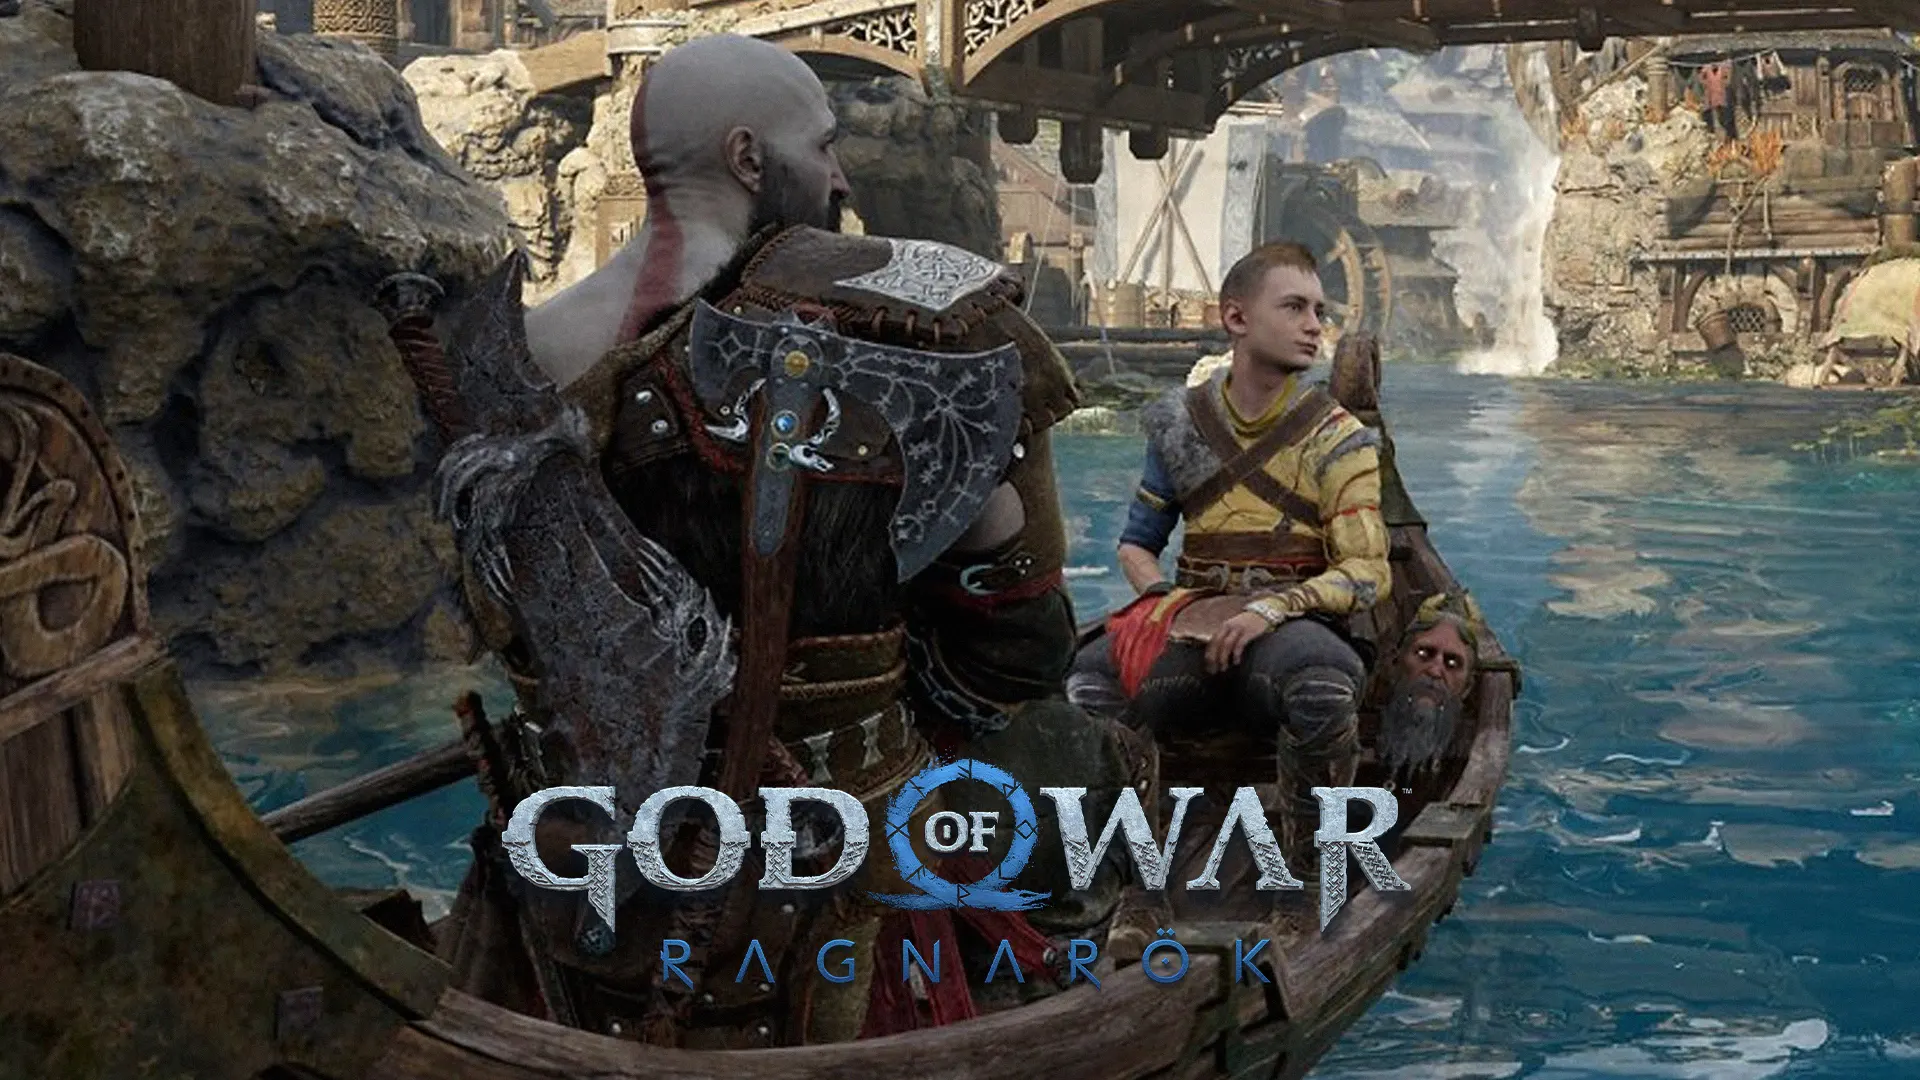 God of War Ragnarok é o segundo título da jornada de Kratos e Atreus, agora o game recebe mais imagens divulgadas pela Santa Monica Studio no site da Sony.